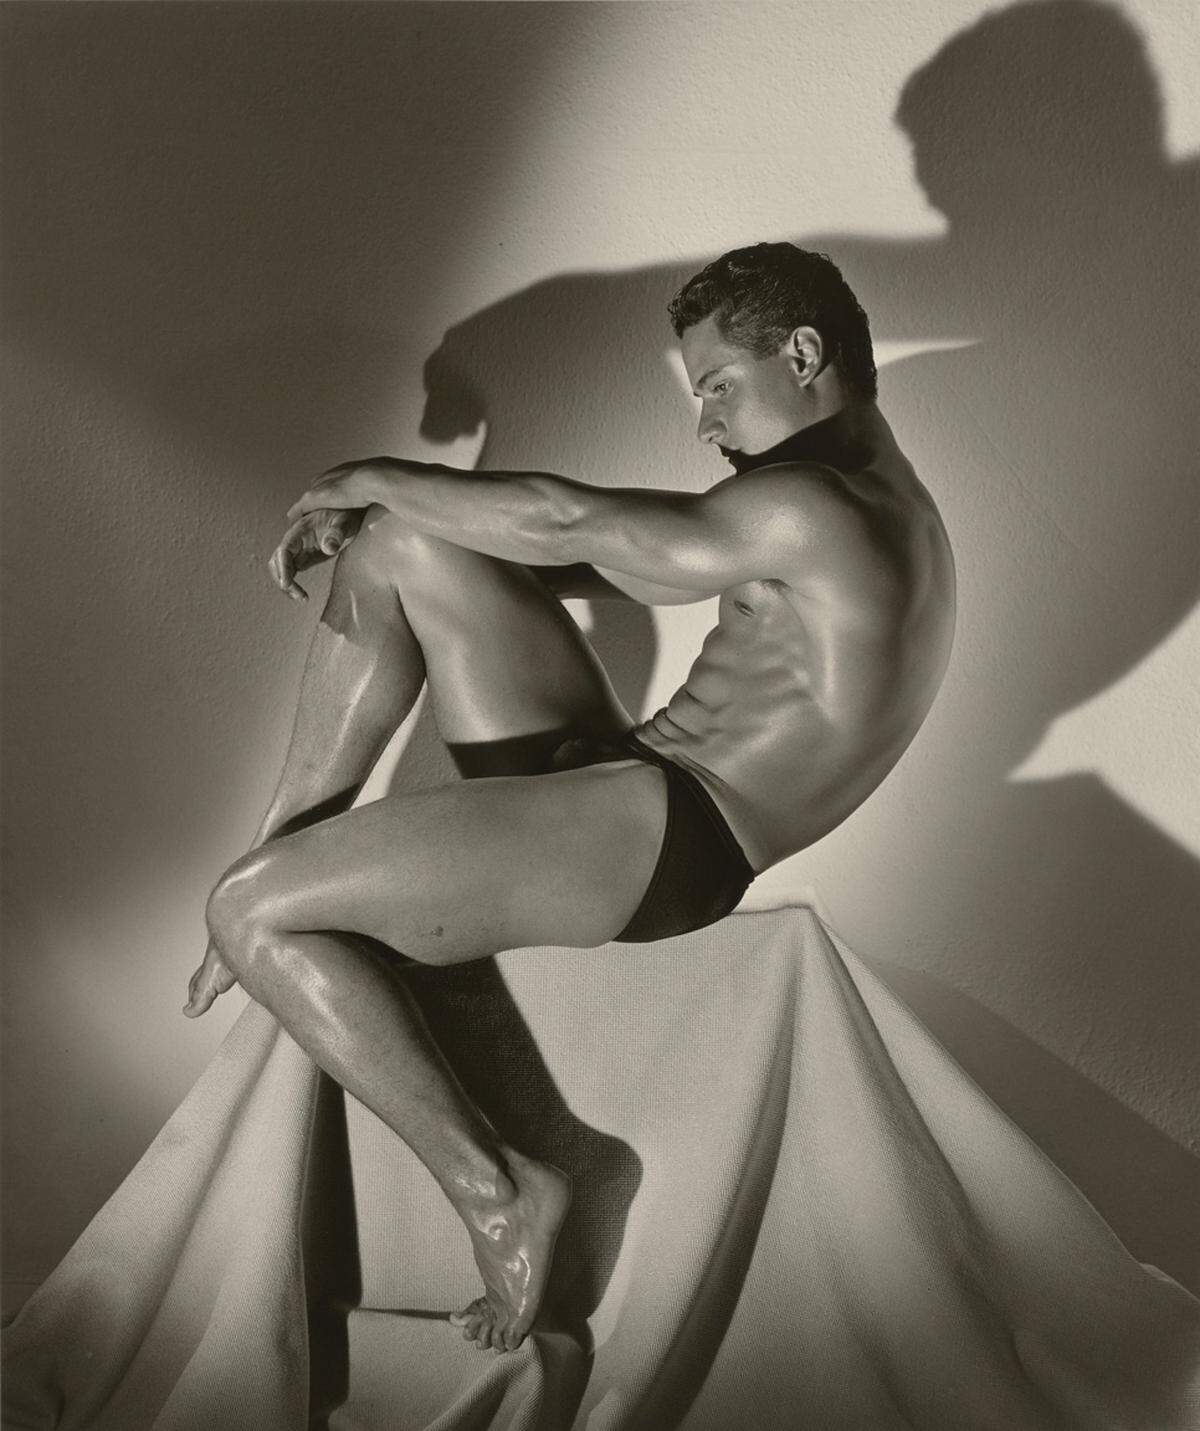 Eine Wende in der Darstellung des männlichen Körpers gelang dem Ausnahme-Fotografen durch seine homoerotischen Akte die er mit Athleten und Tänzer umsetzte. Greg Louganis, Hollywood, 1987.